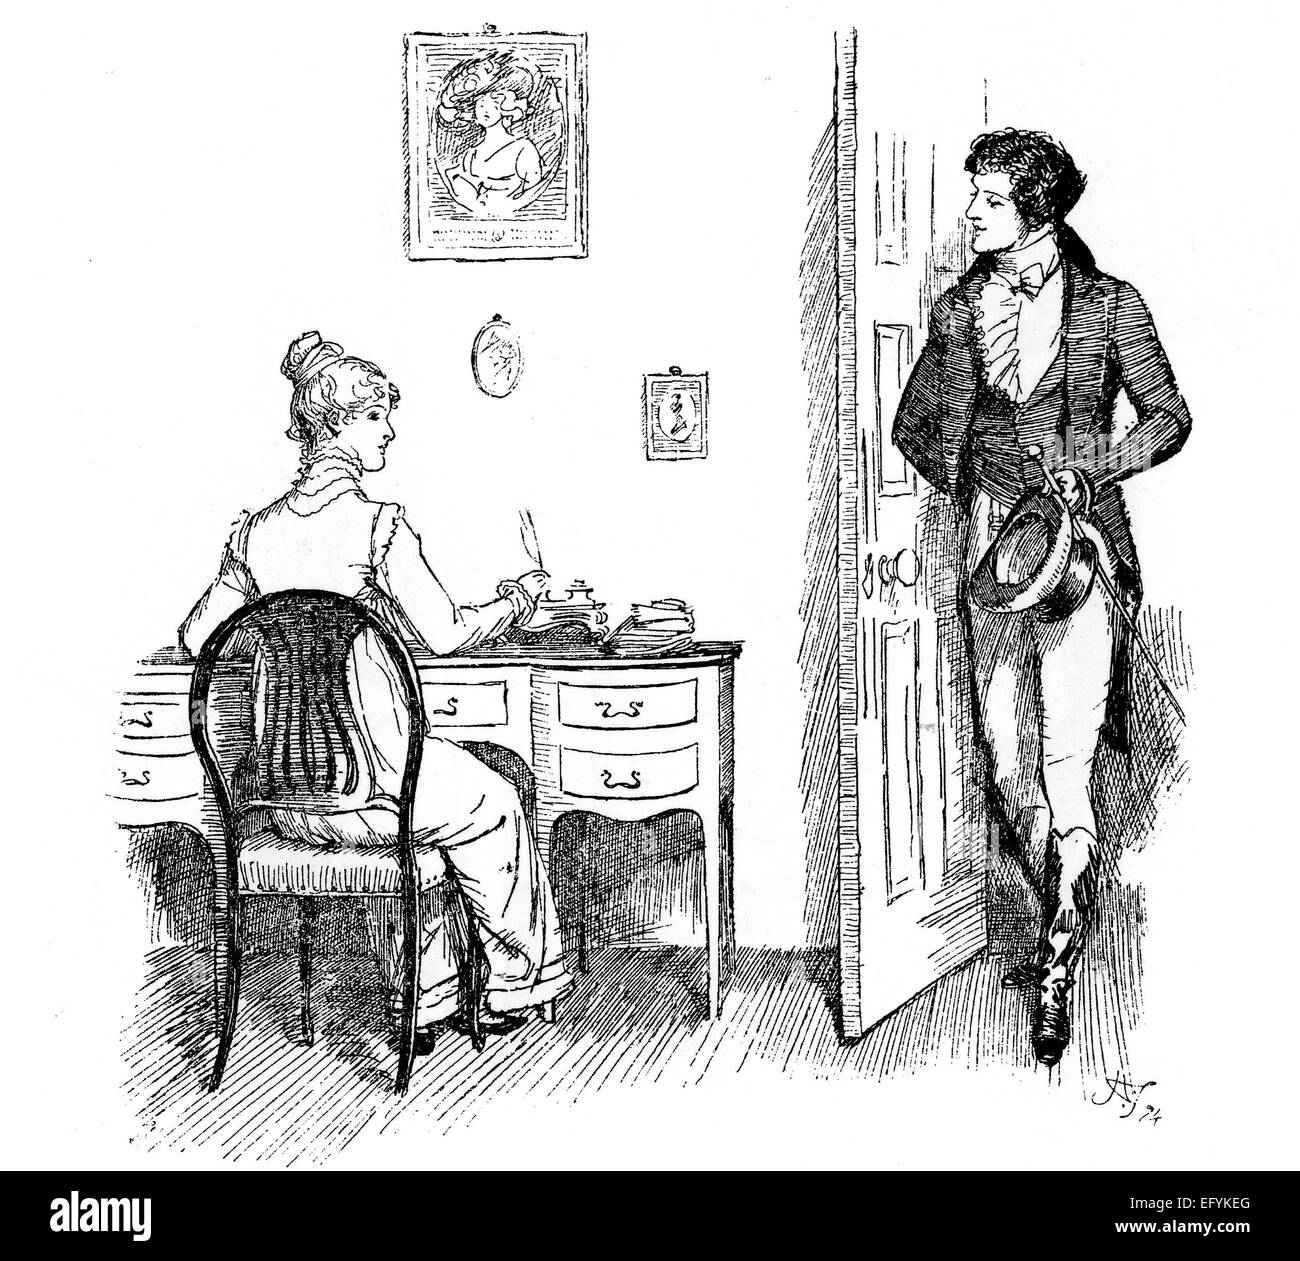 Orgueil et préjugés Illustration par Hugh Thomson pour le chapitre 32 du roman de Jane Austen dans une édition 1894. Mr Darcy trouve Elizabeth Bennett par elle-même comme il rend visite à Hunsford Parsonage Banque D'Images